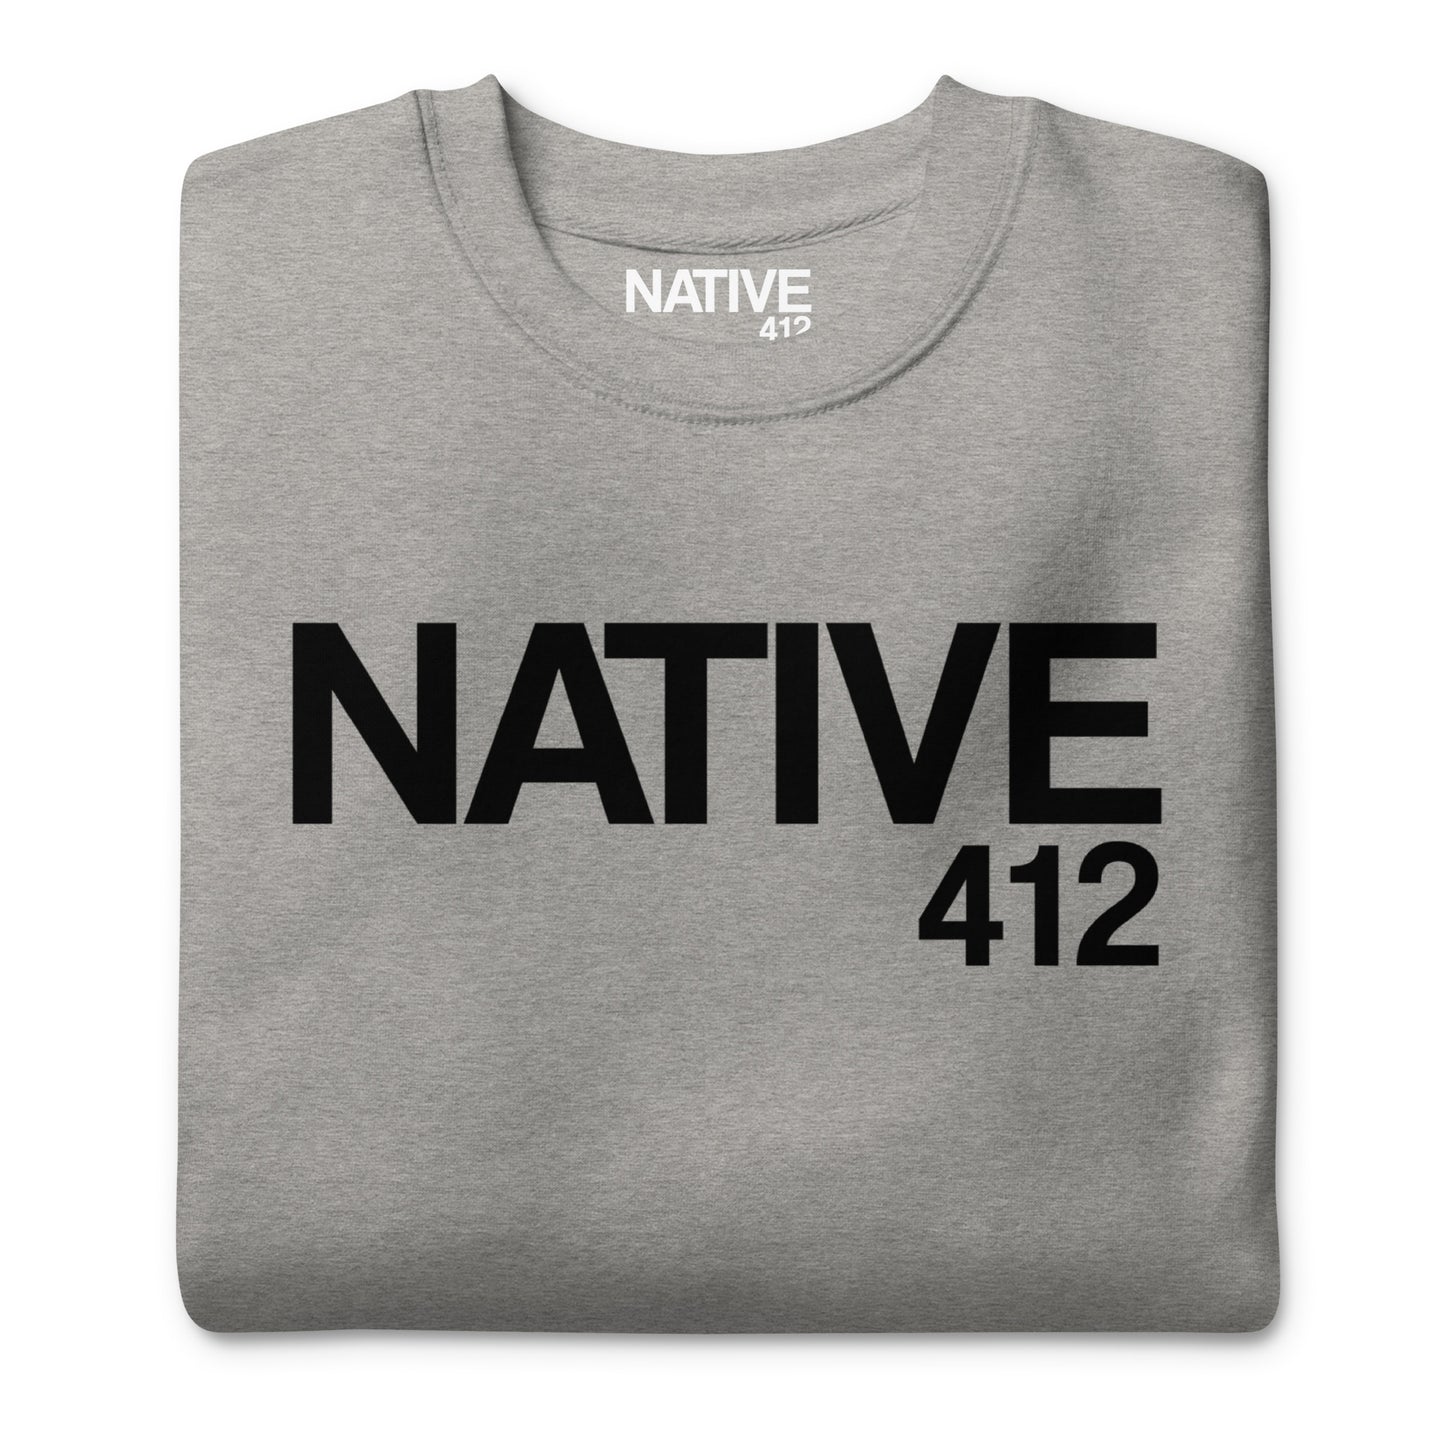 Native 412 Classic Athletic Grey Unisex Premium Sweatshirt